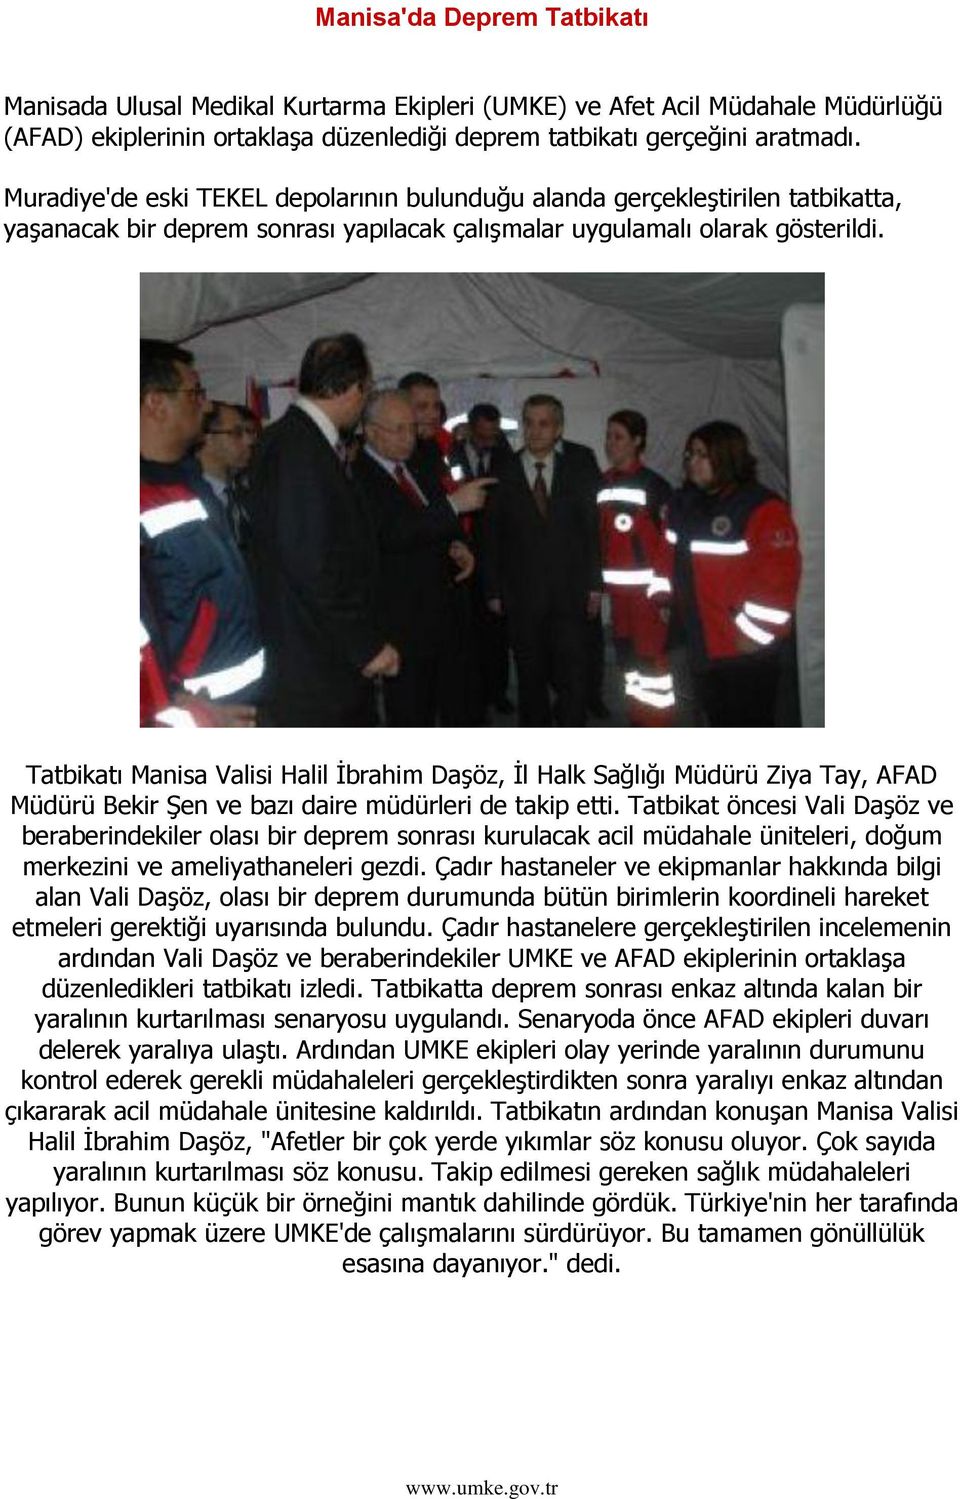 Tatbikatı Manisa Valisi Halil Ġbrahim DaĢöz, Ġl Halk Sağlığı Müdürü Ziya Tay, AFAD Müdürü Bekir ġen ve bazı daire müdürleri de takip etti.